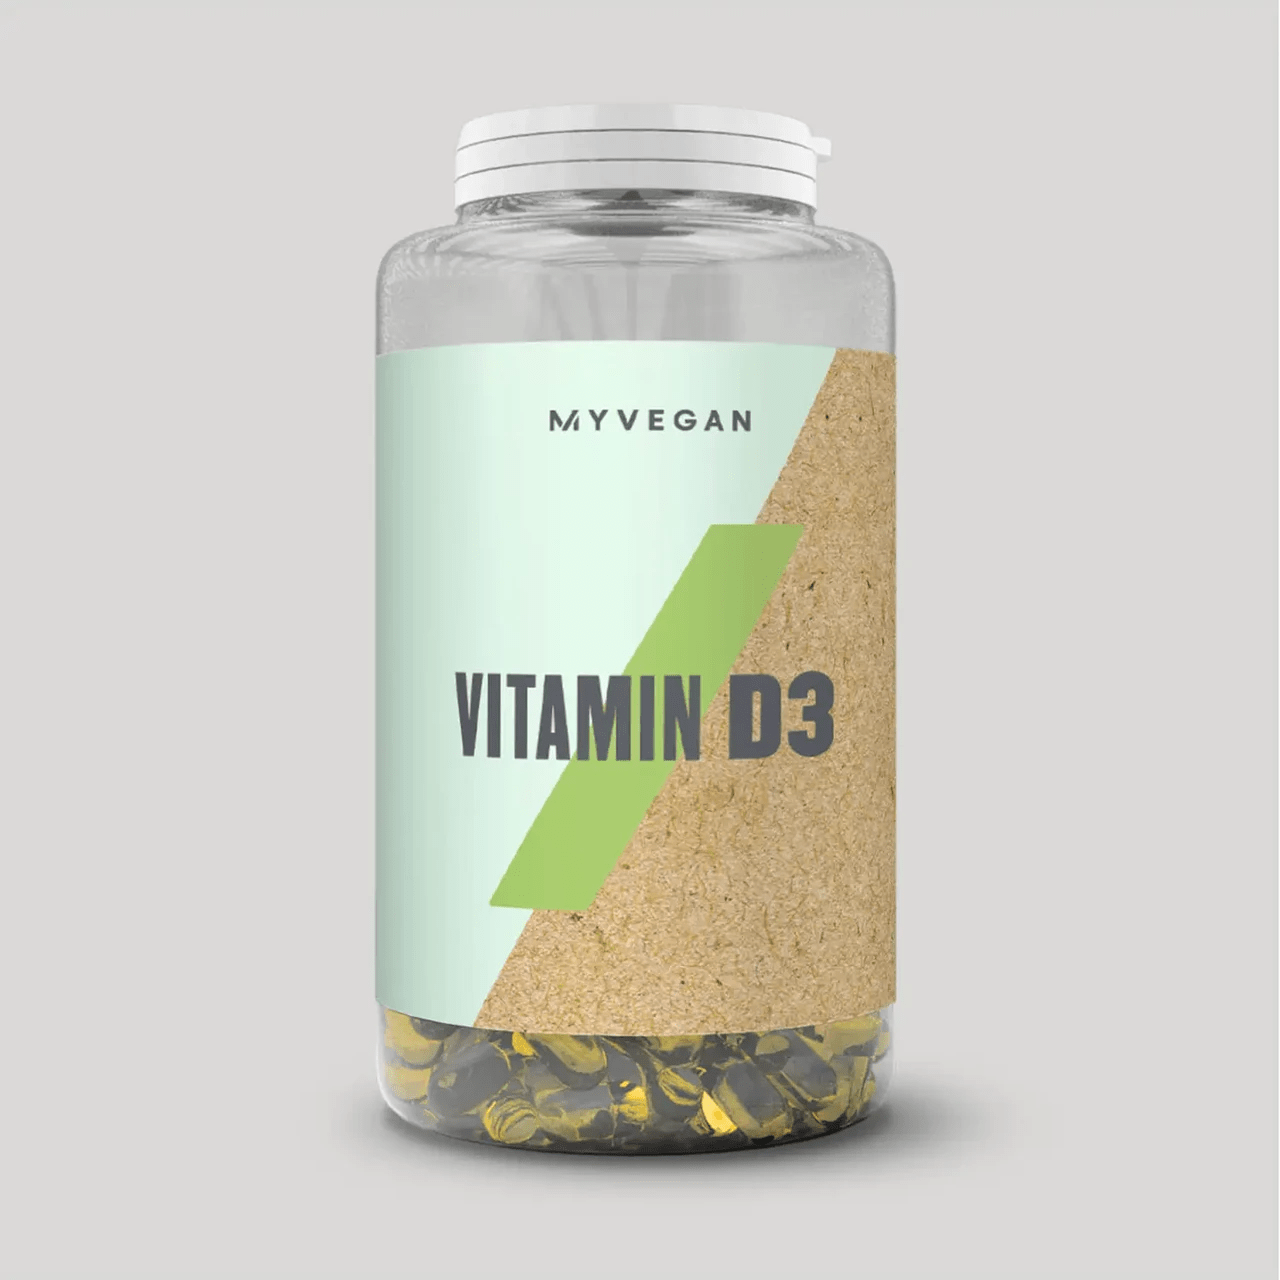 MyProtein Vitamin D3 180 caps,  мл, MyProtein. Витамины и минералы. Поддержание здоровья Укрепление иммунитета 